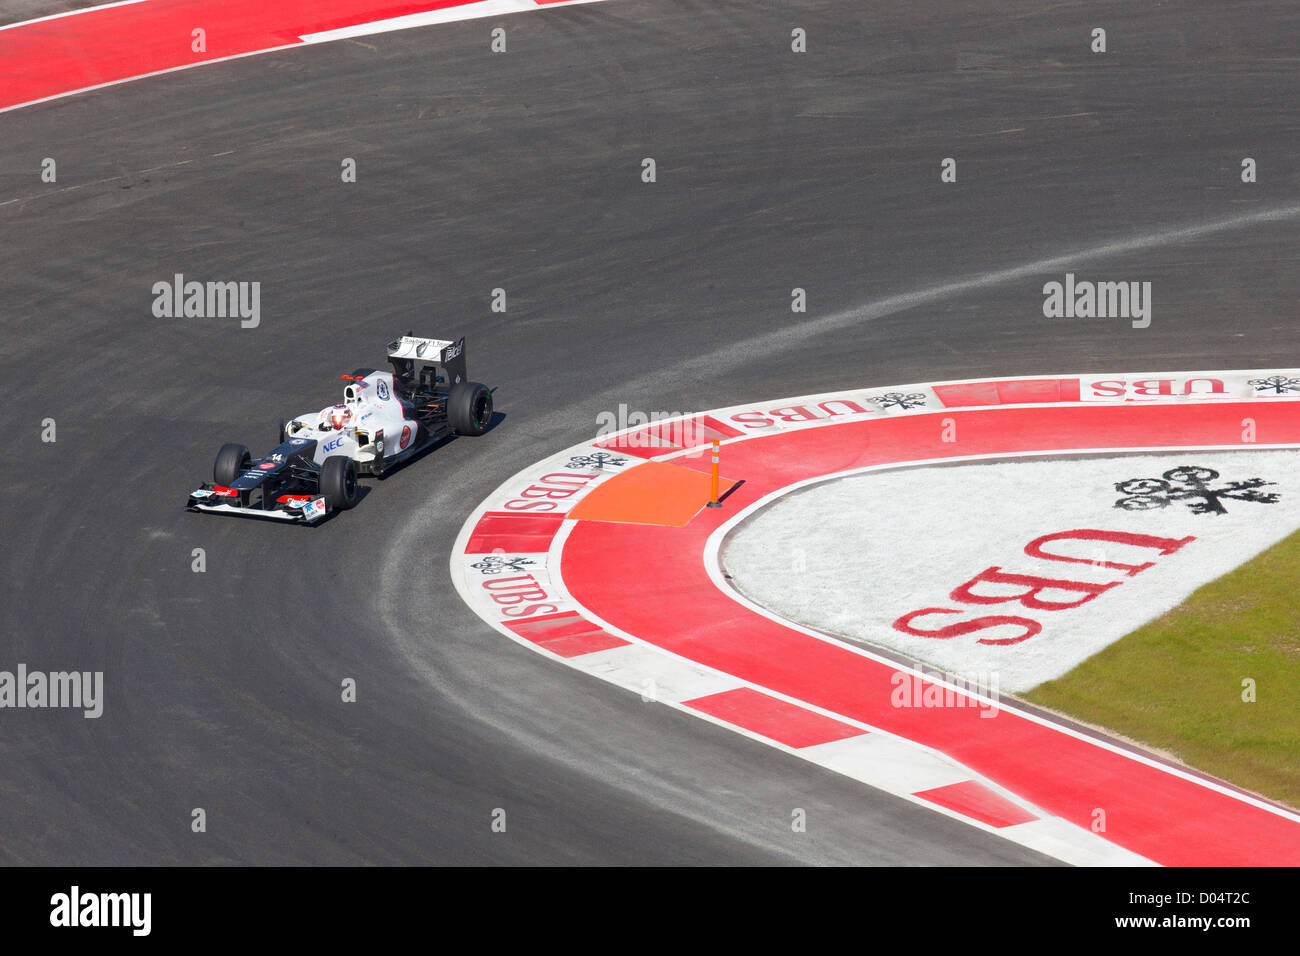 Dans le Kamui Kobayashi, Sauber F1 au cours de la pratique de la Formule Un Grand Prix des Etats-Unis sur le circuit des Amériques Banque D'Images